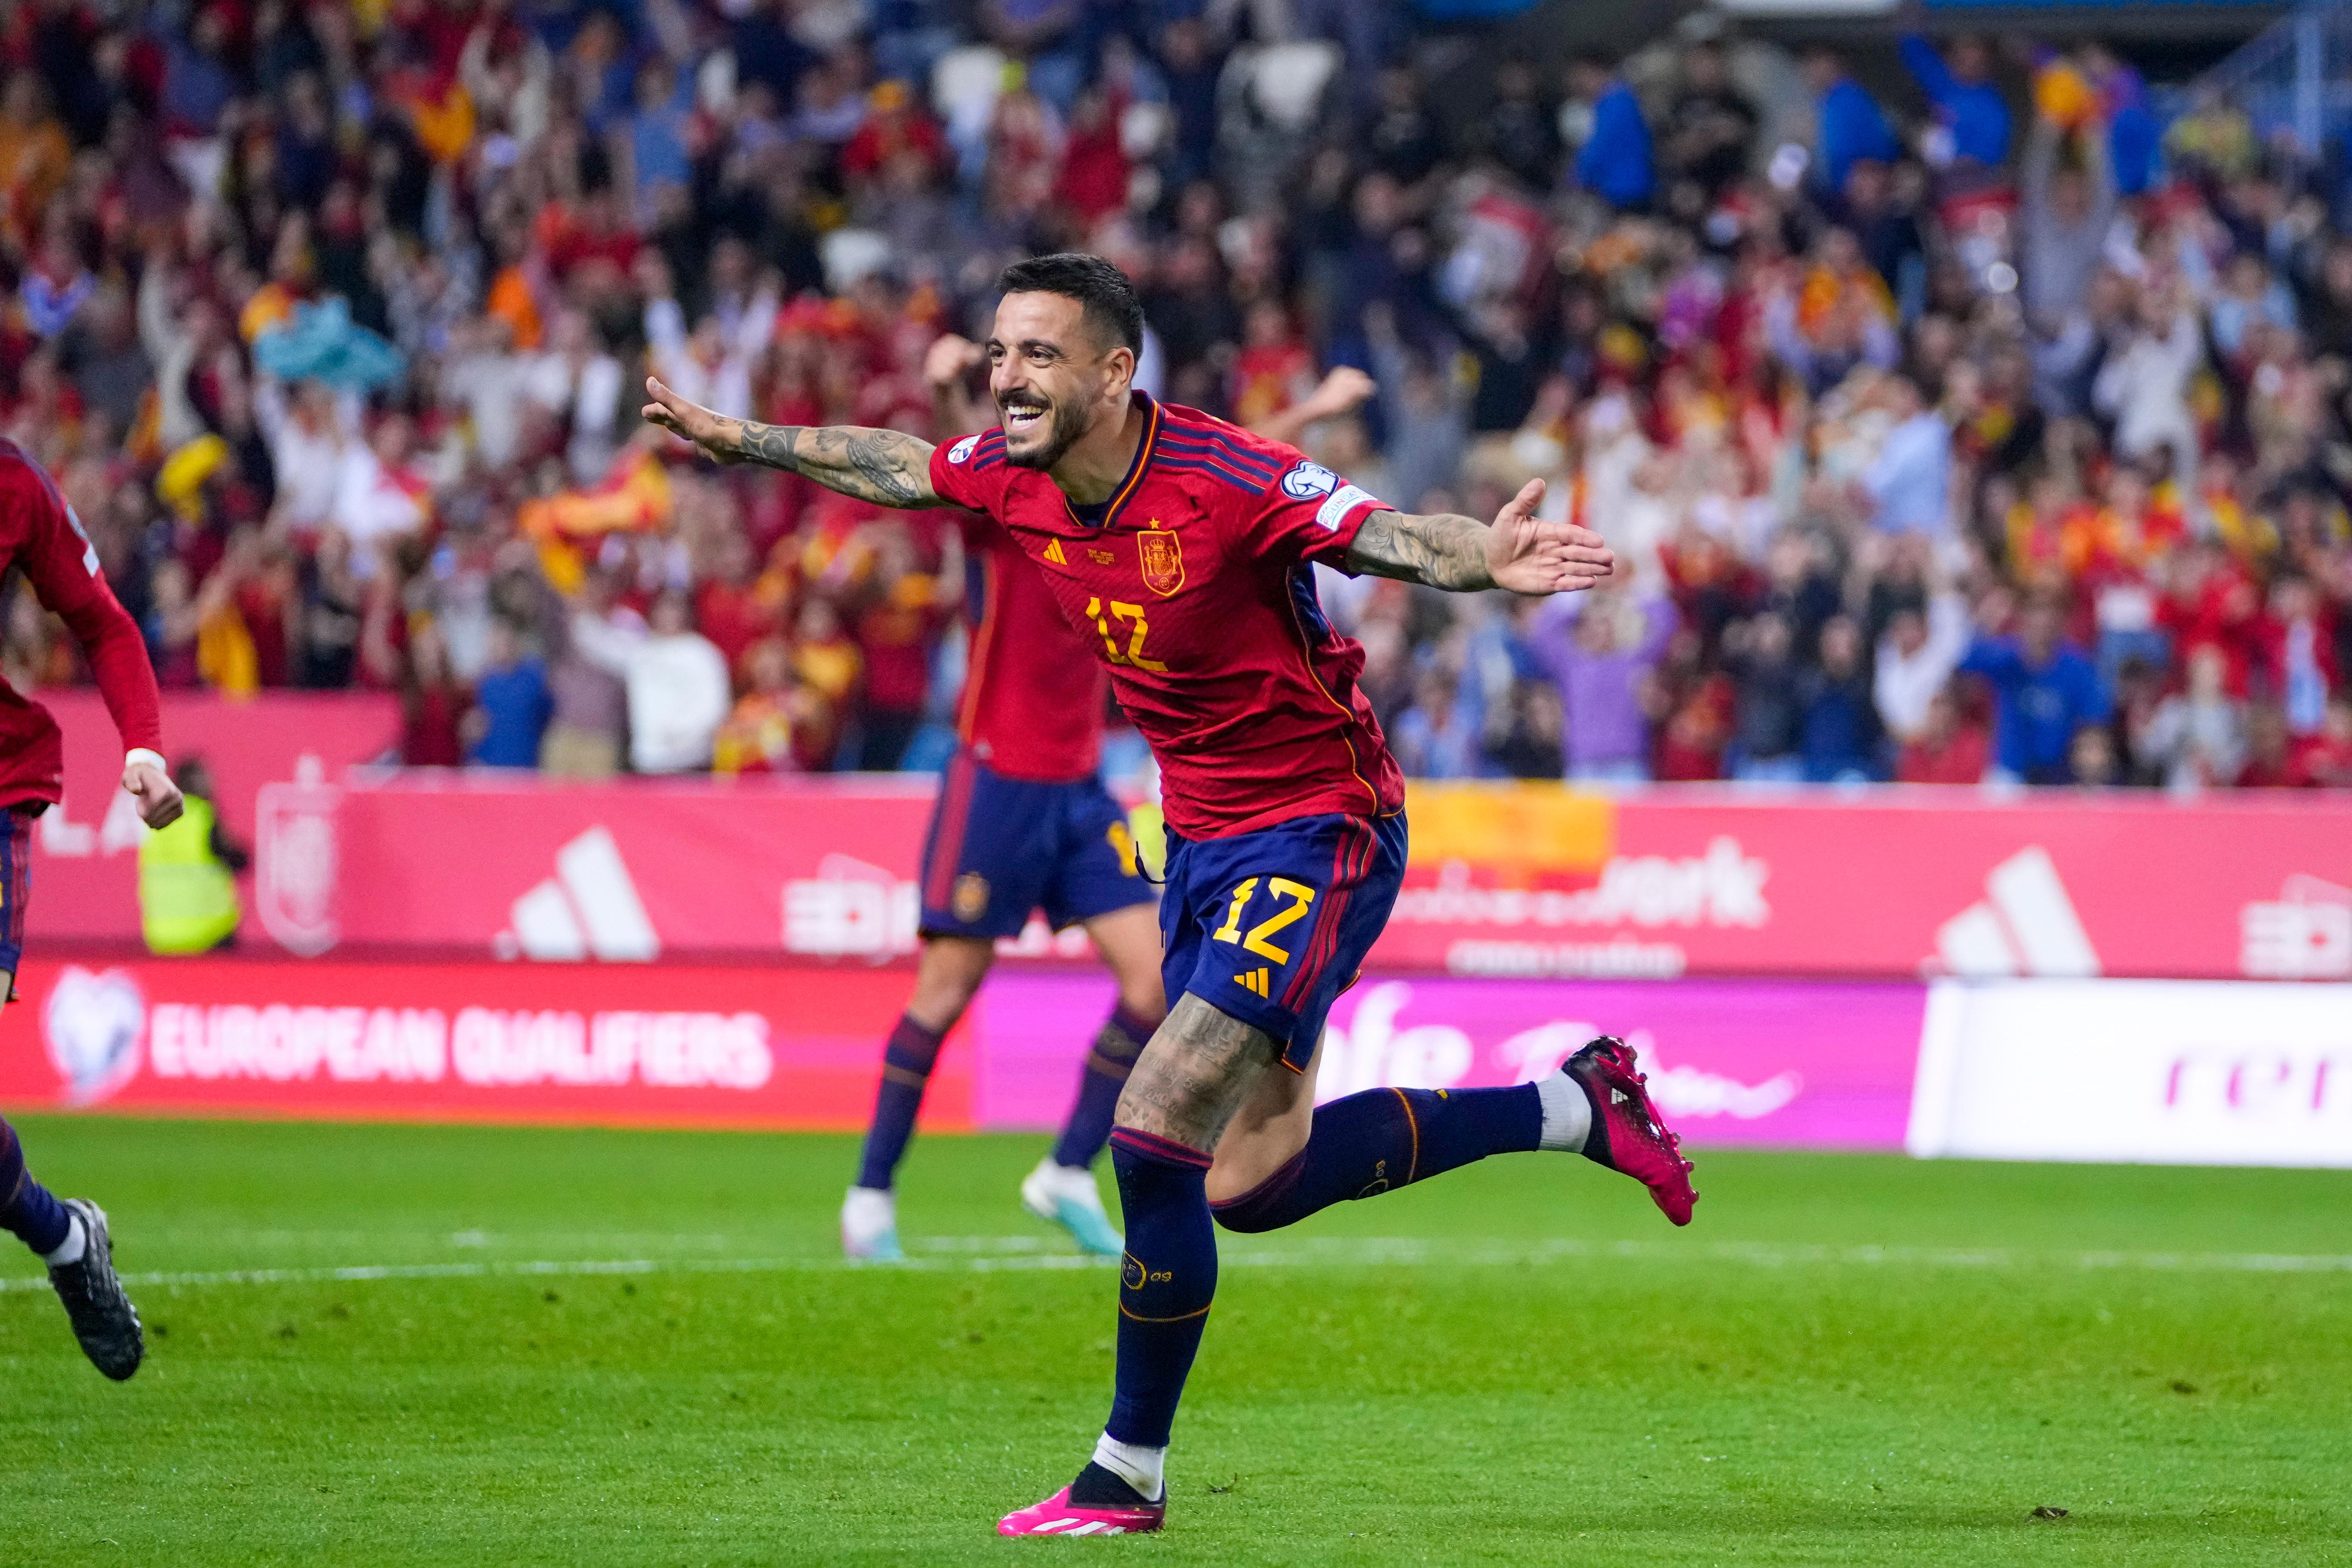 Espanha vence Escócia e Noruega goleia Chipre com golos de Haaland